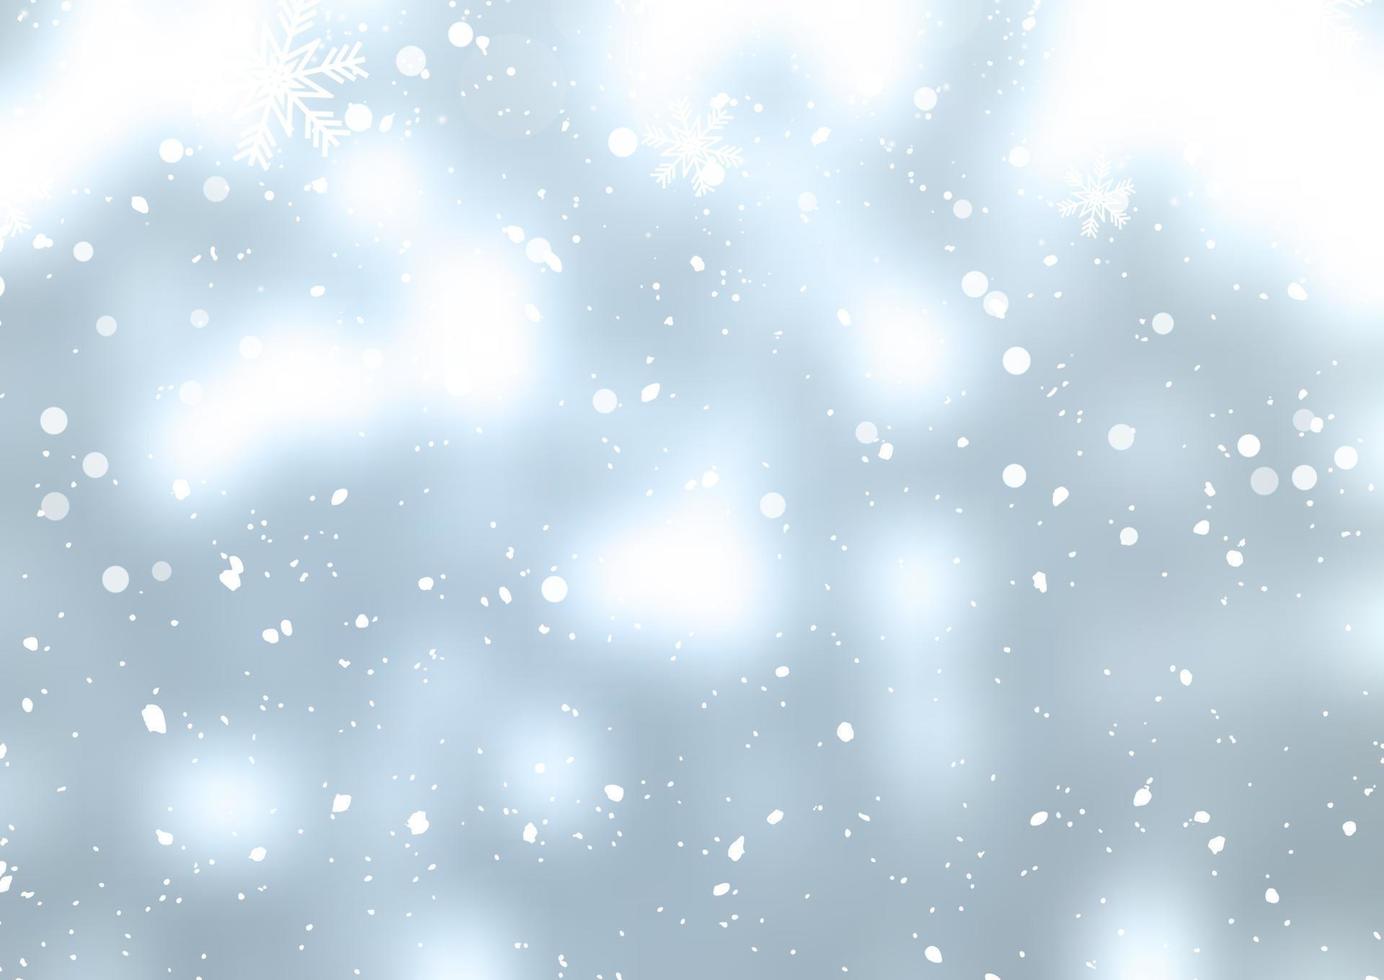 fundo de natal com flocos de neve caindo vetor